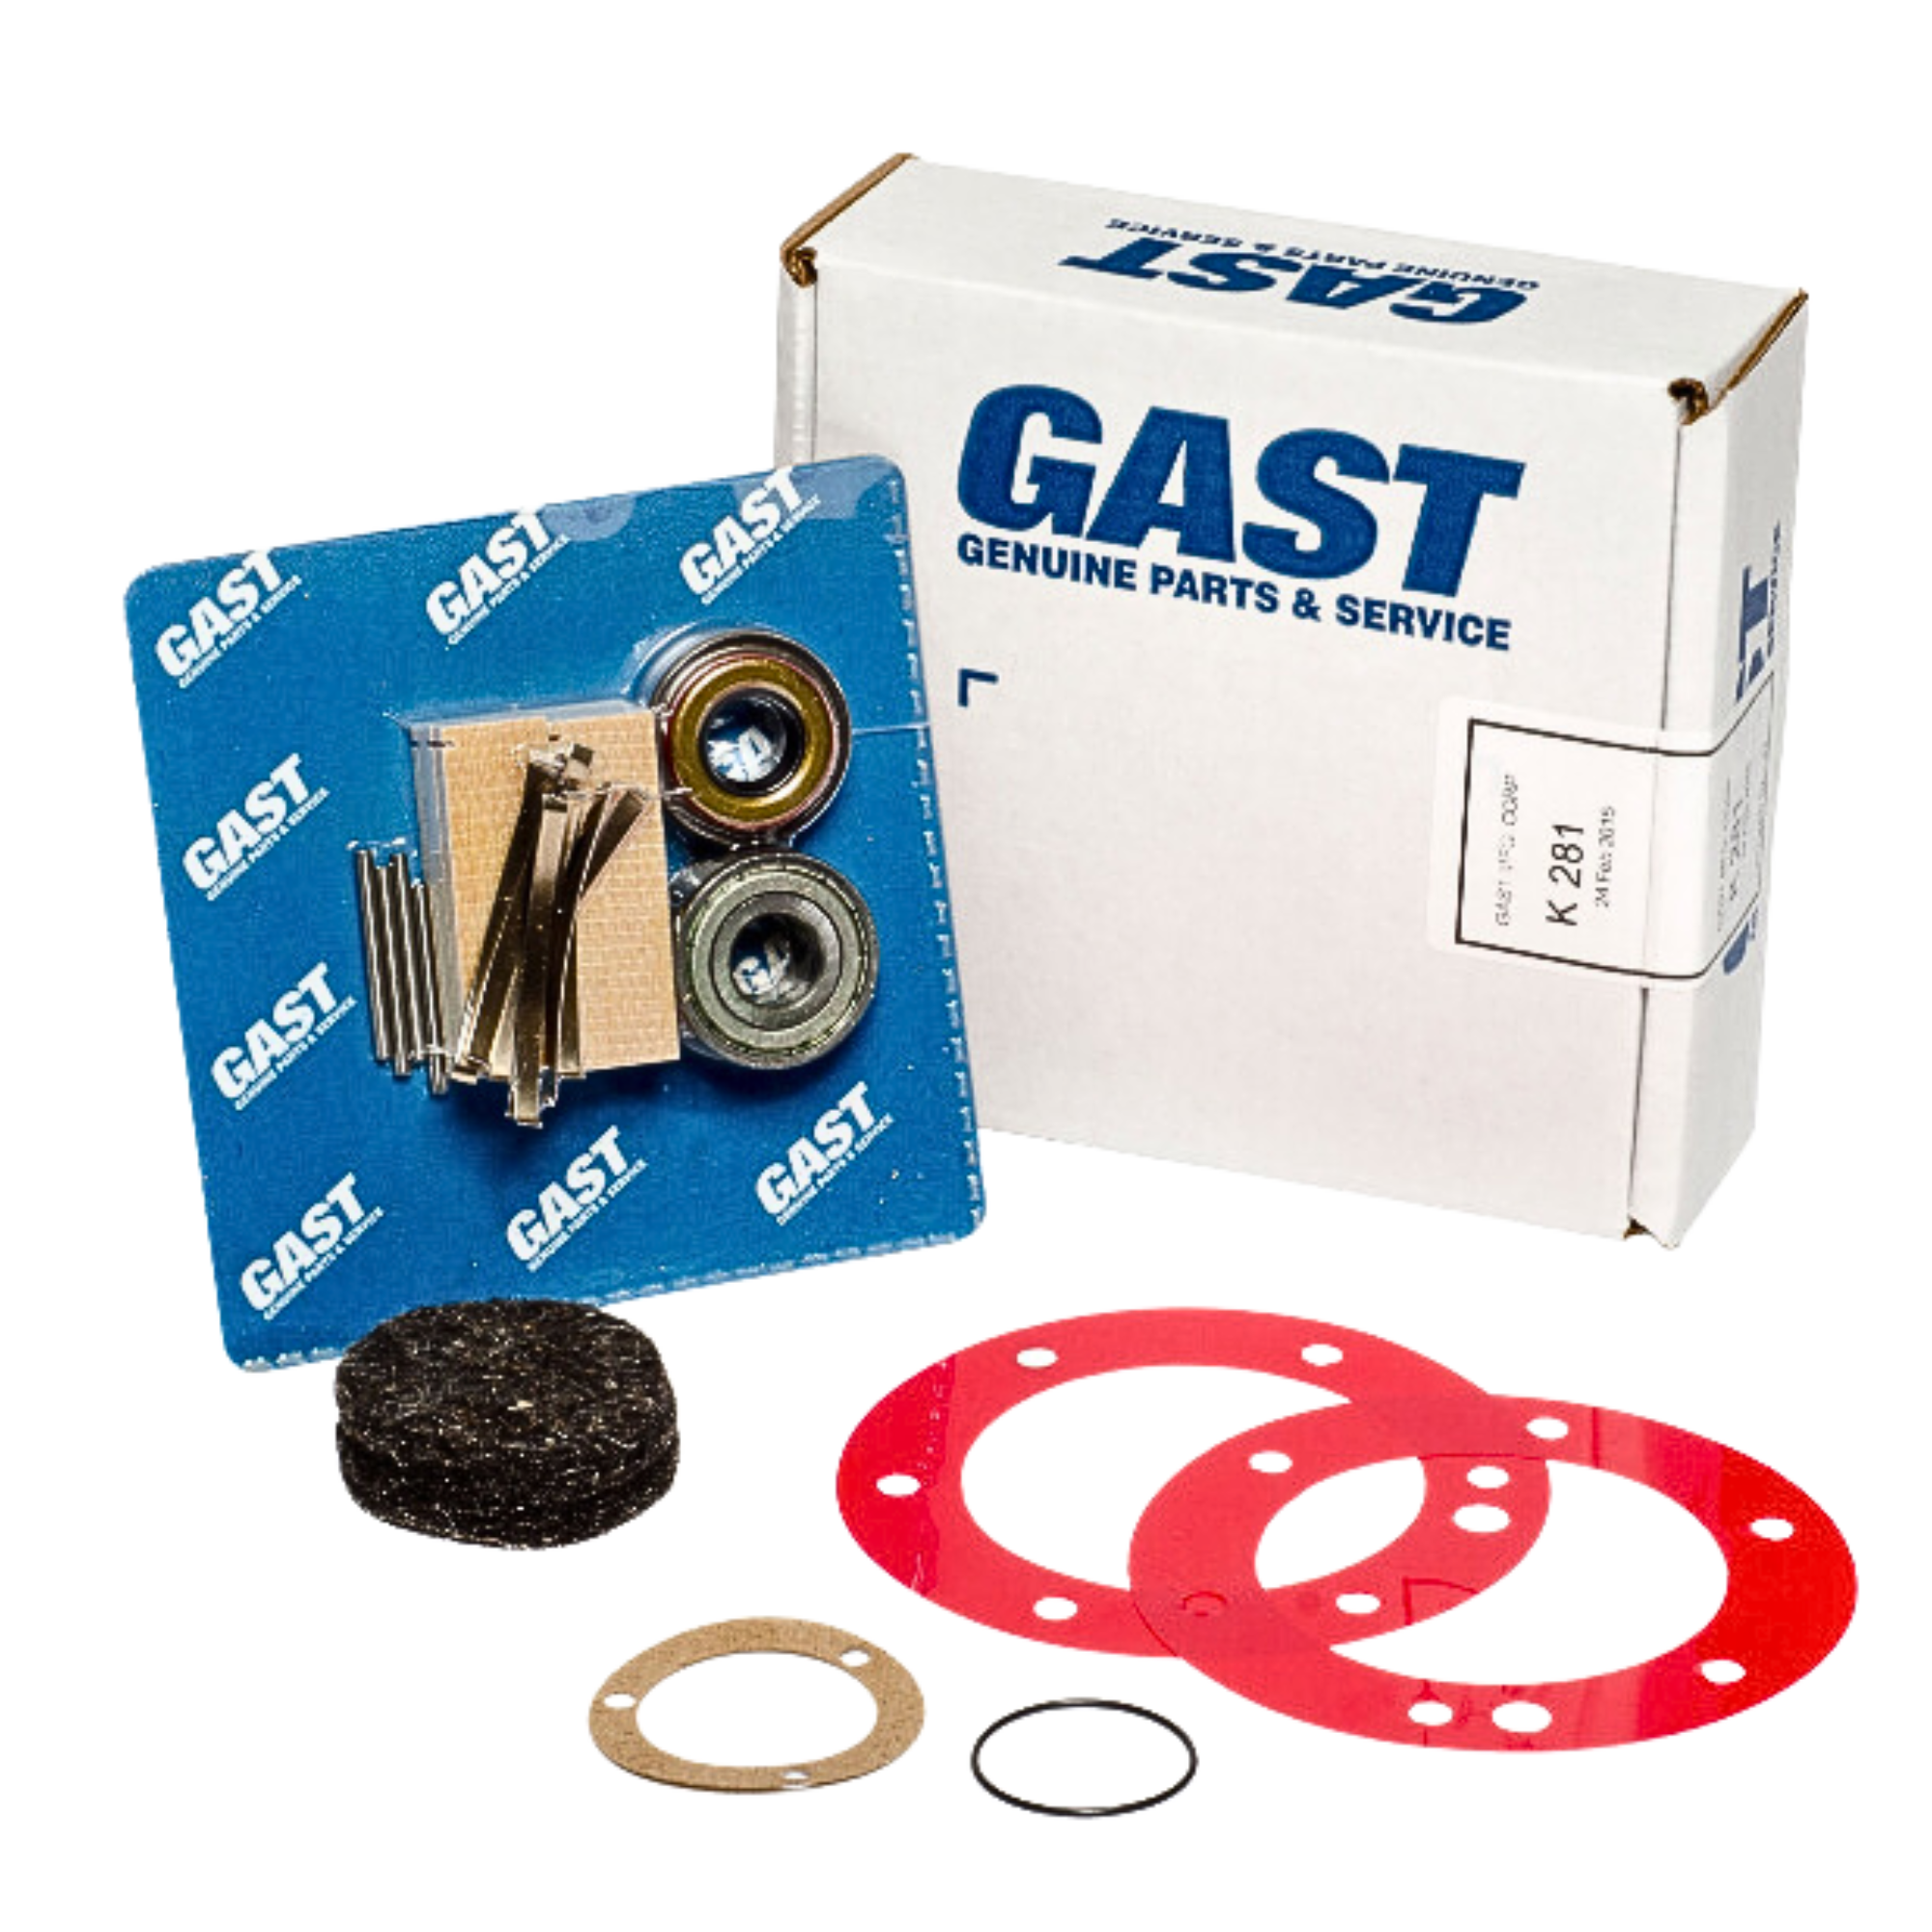 Gast | 6AM Service Kit (8 vane) | K281 used on gast product line